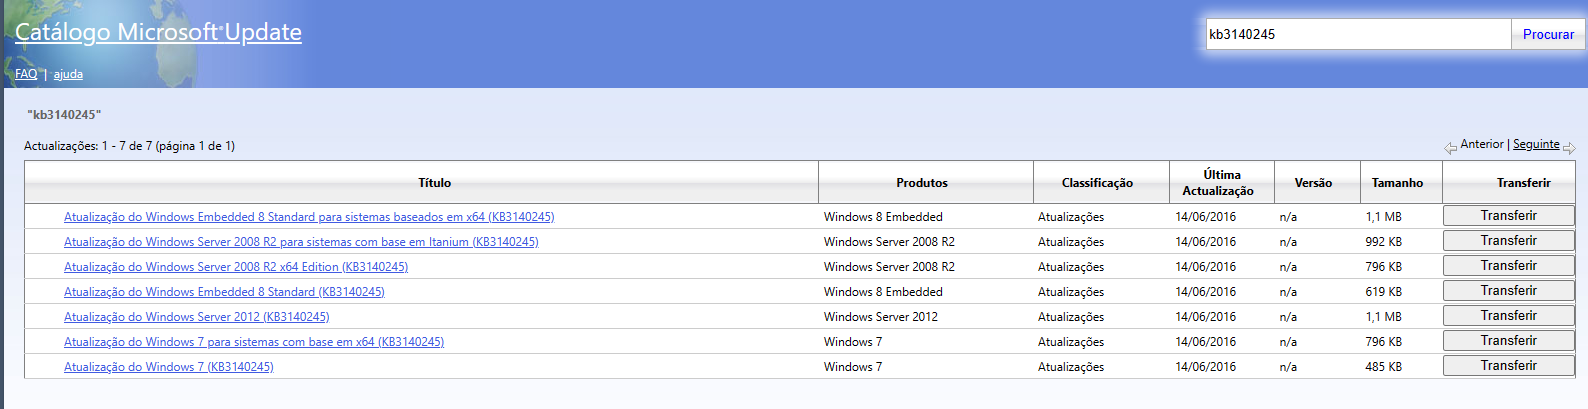 Catalogo de Atualizações Windows